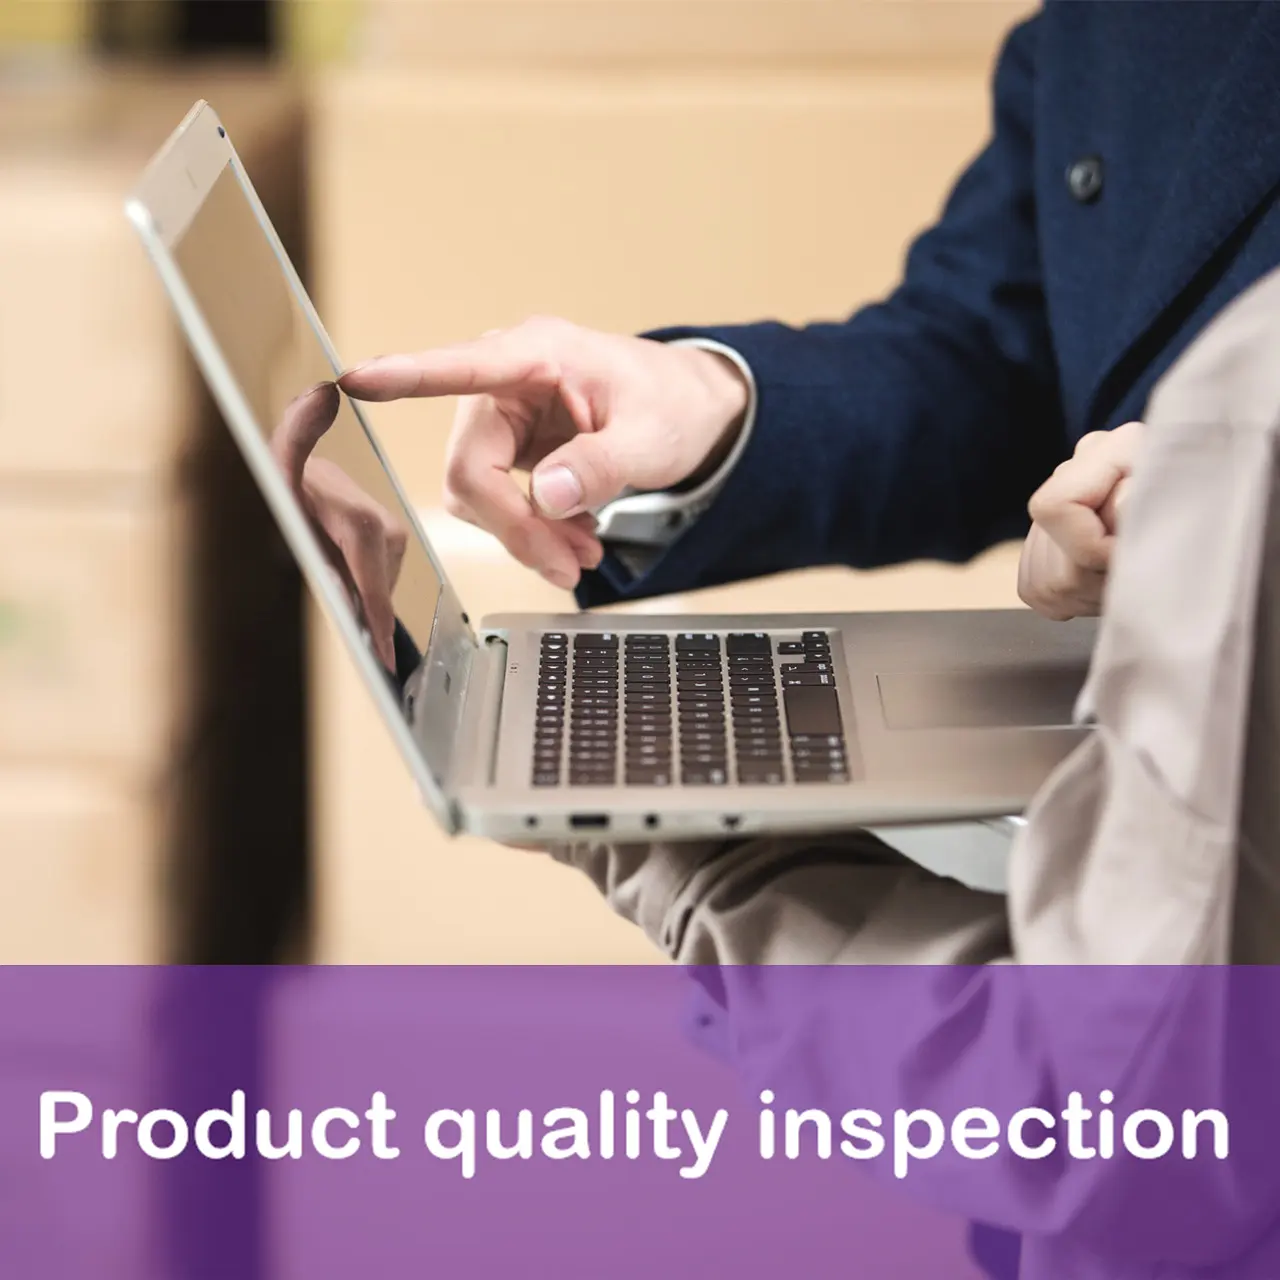 Empresa DE INSPECCIÓN DE TERCEROS Servicios de Inspección de Productos inspección de control de calidad en Shenzhen Ningbo Tianjin Qingdao